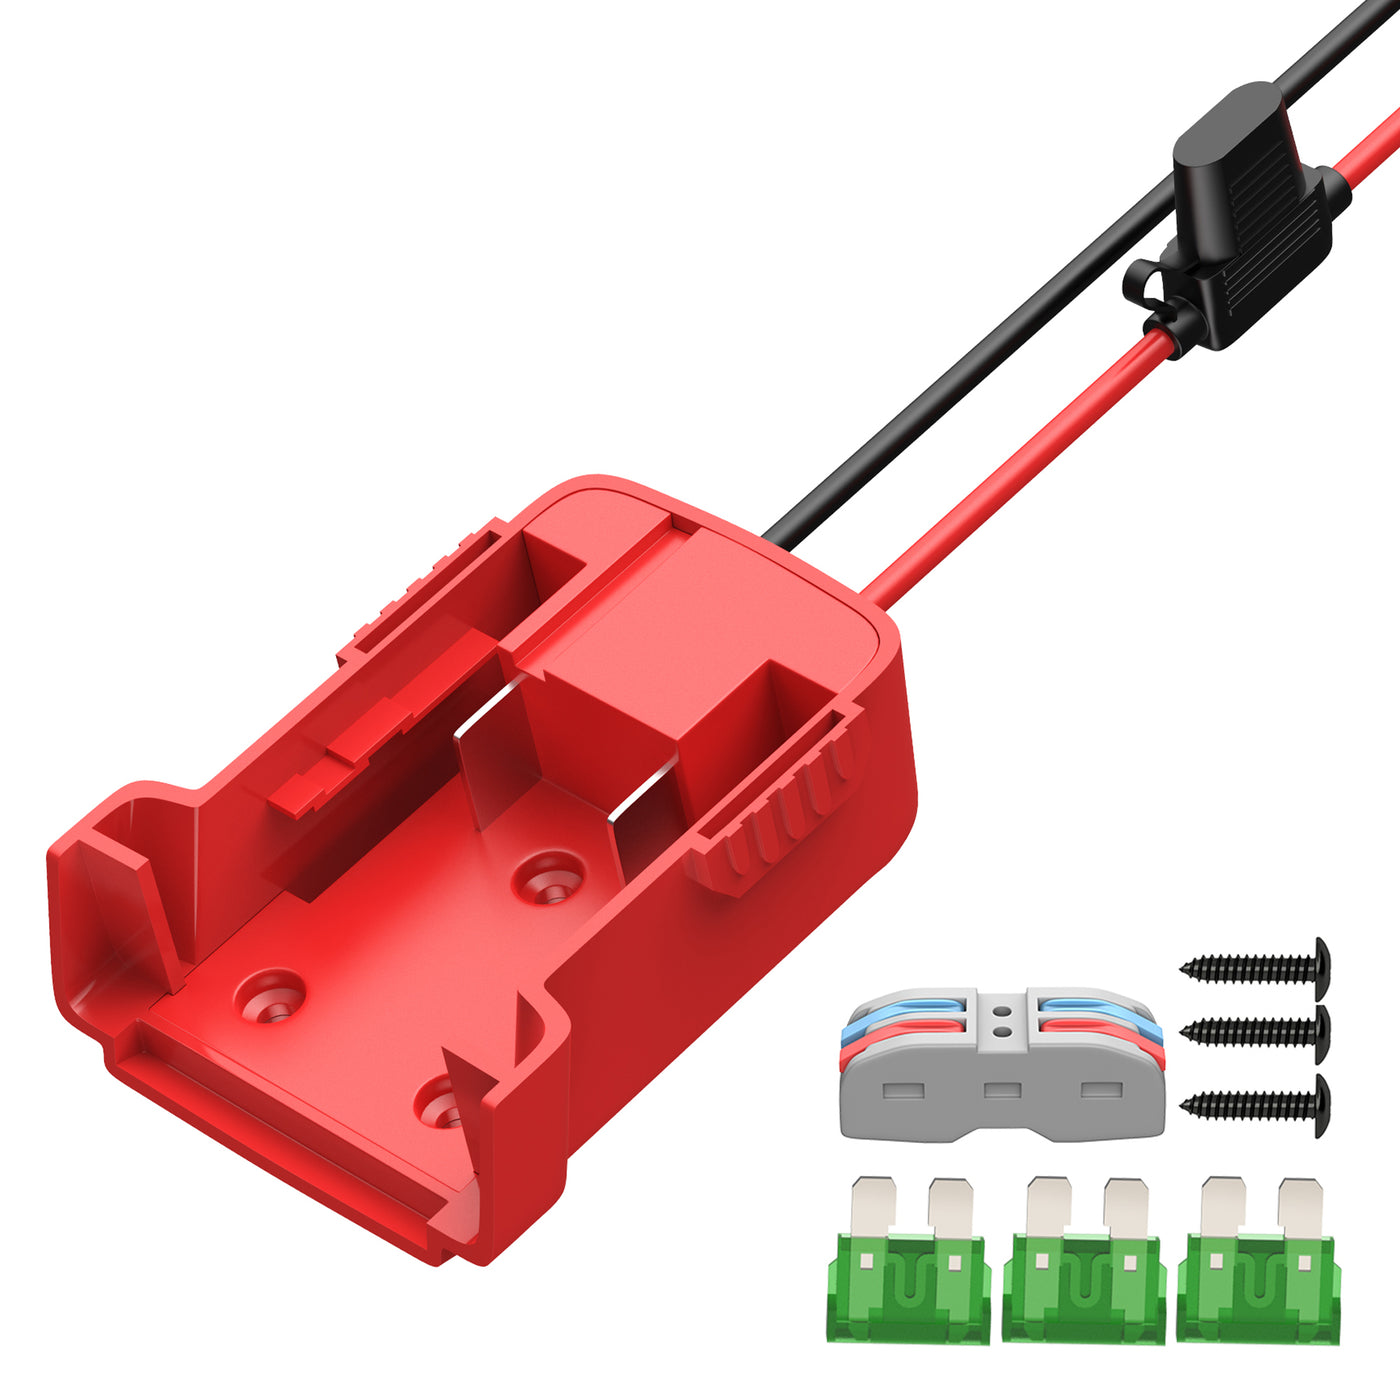 Power Wheels Battery Adapter Converter Kit for Milwaukee M18 Batteries